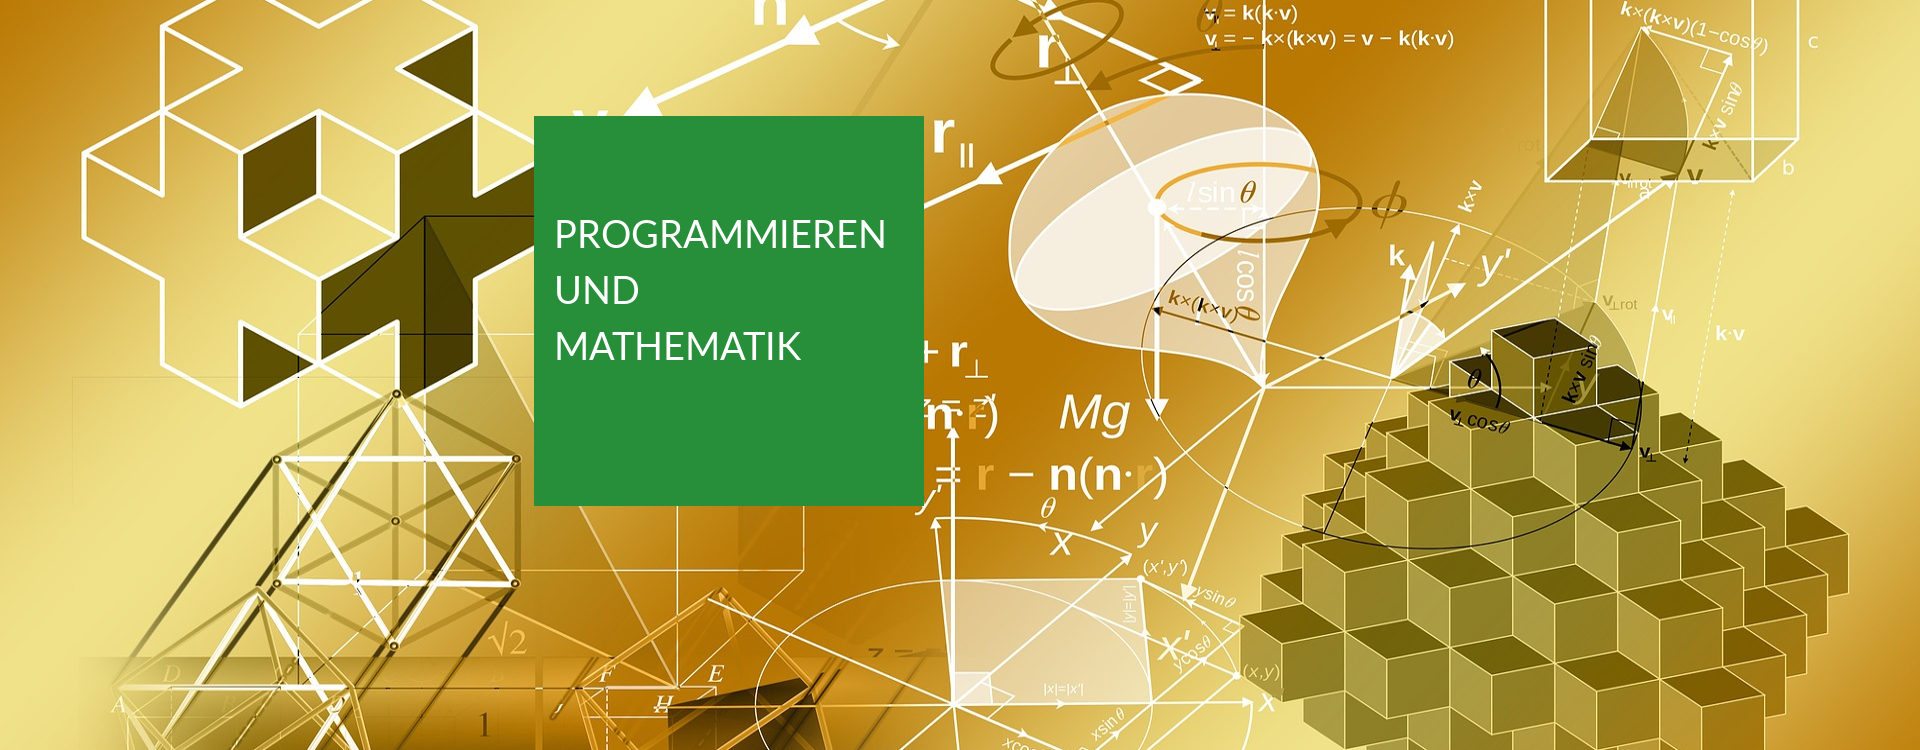 Programmieren und Mathematik